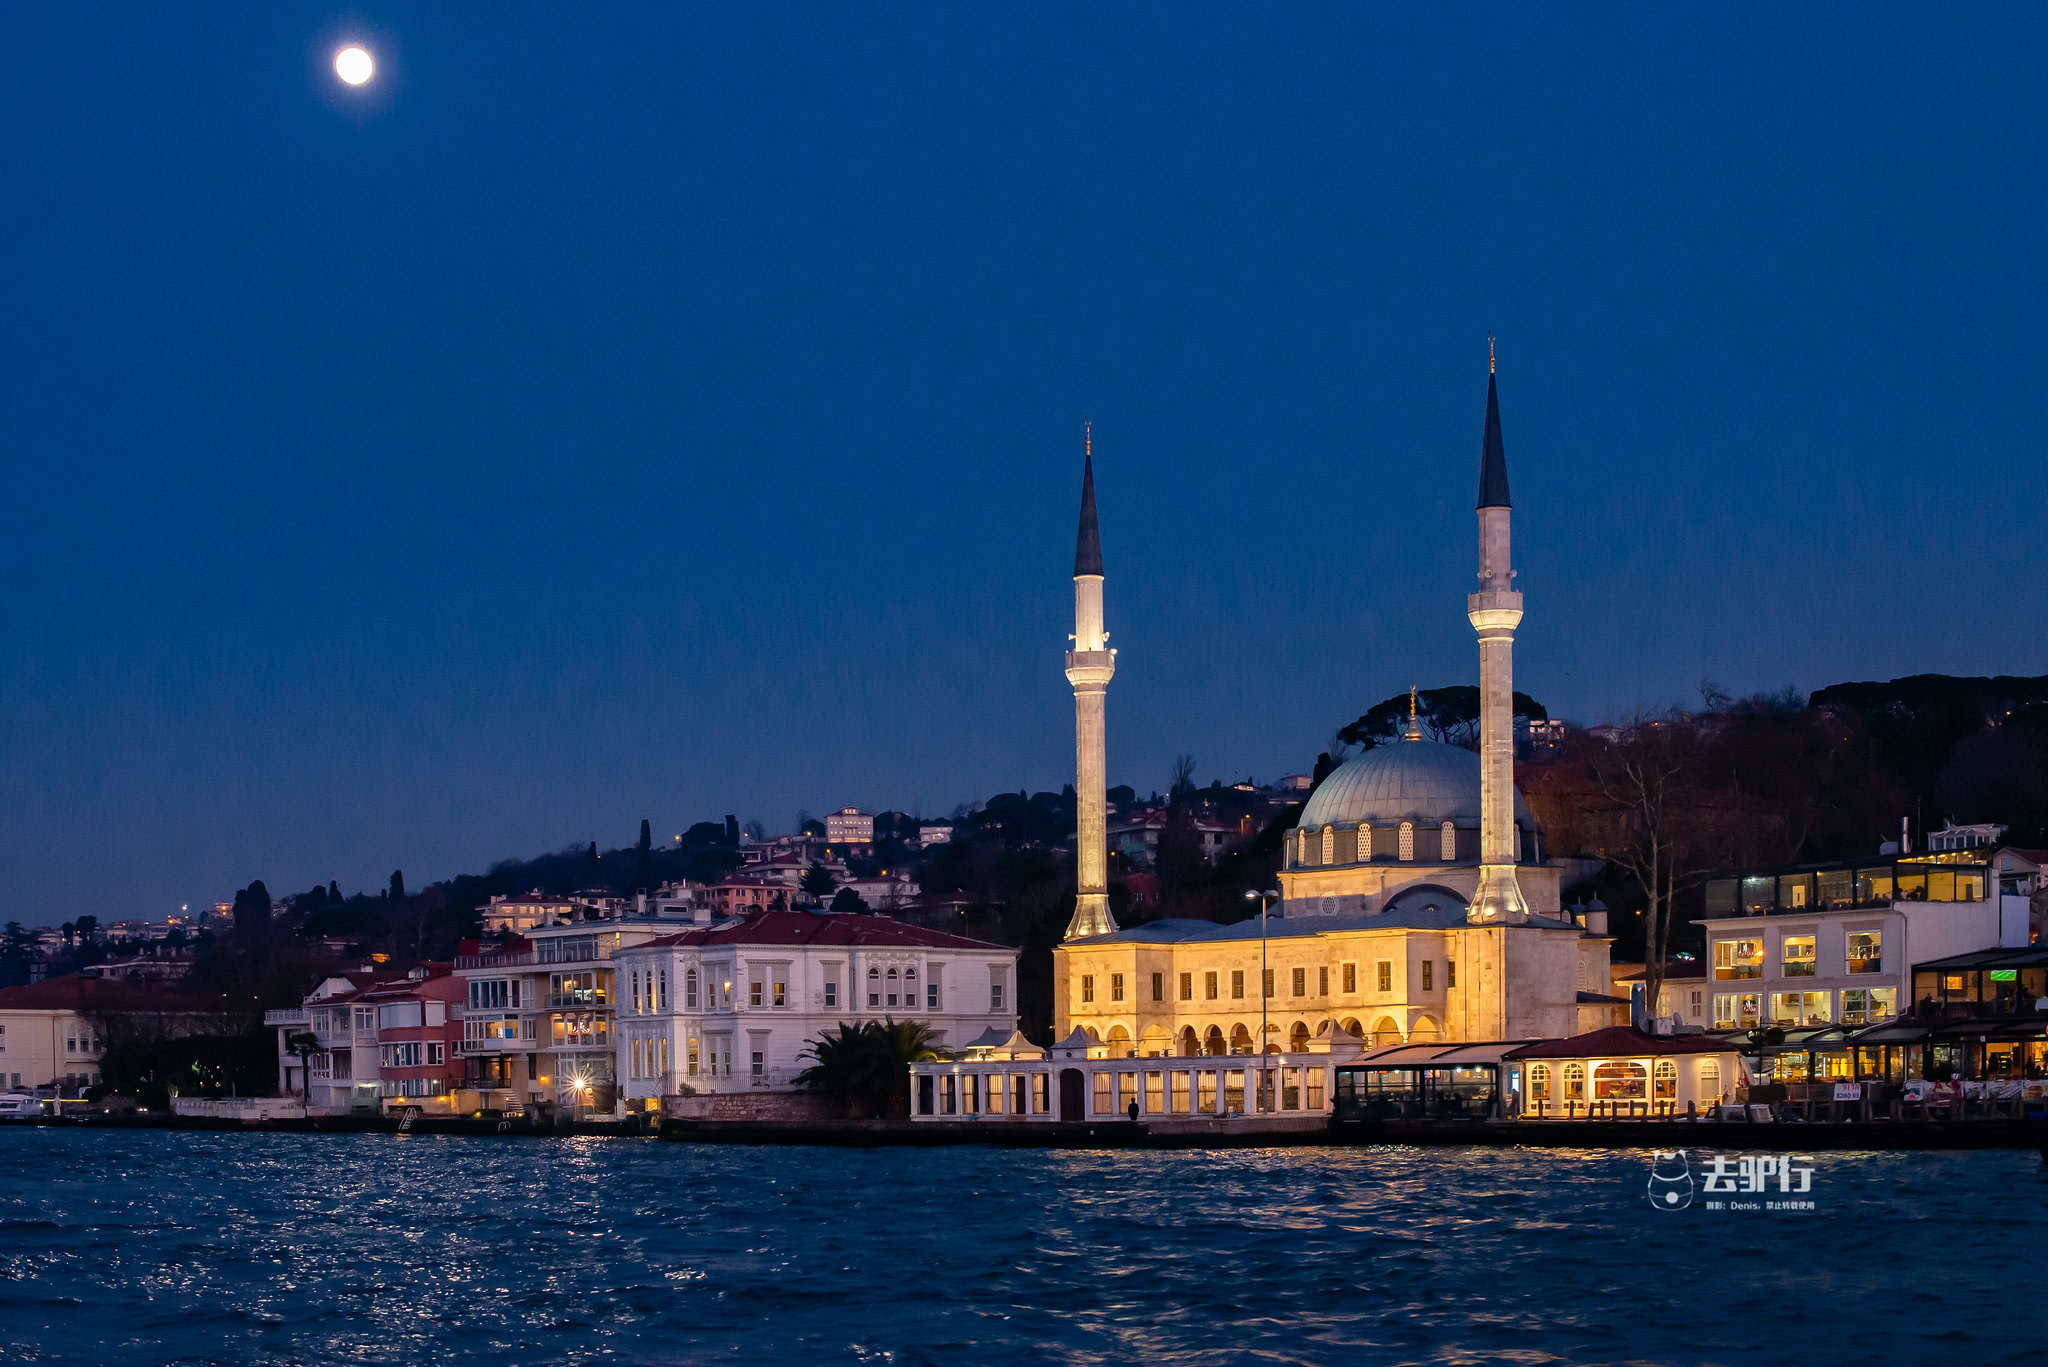 夜景也是伊斯坦布尔一大特色,比起欧洲那些古老的城市,伊斯坦布尔的